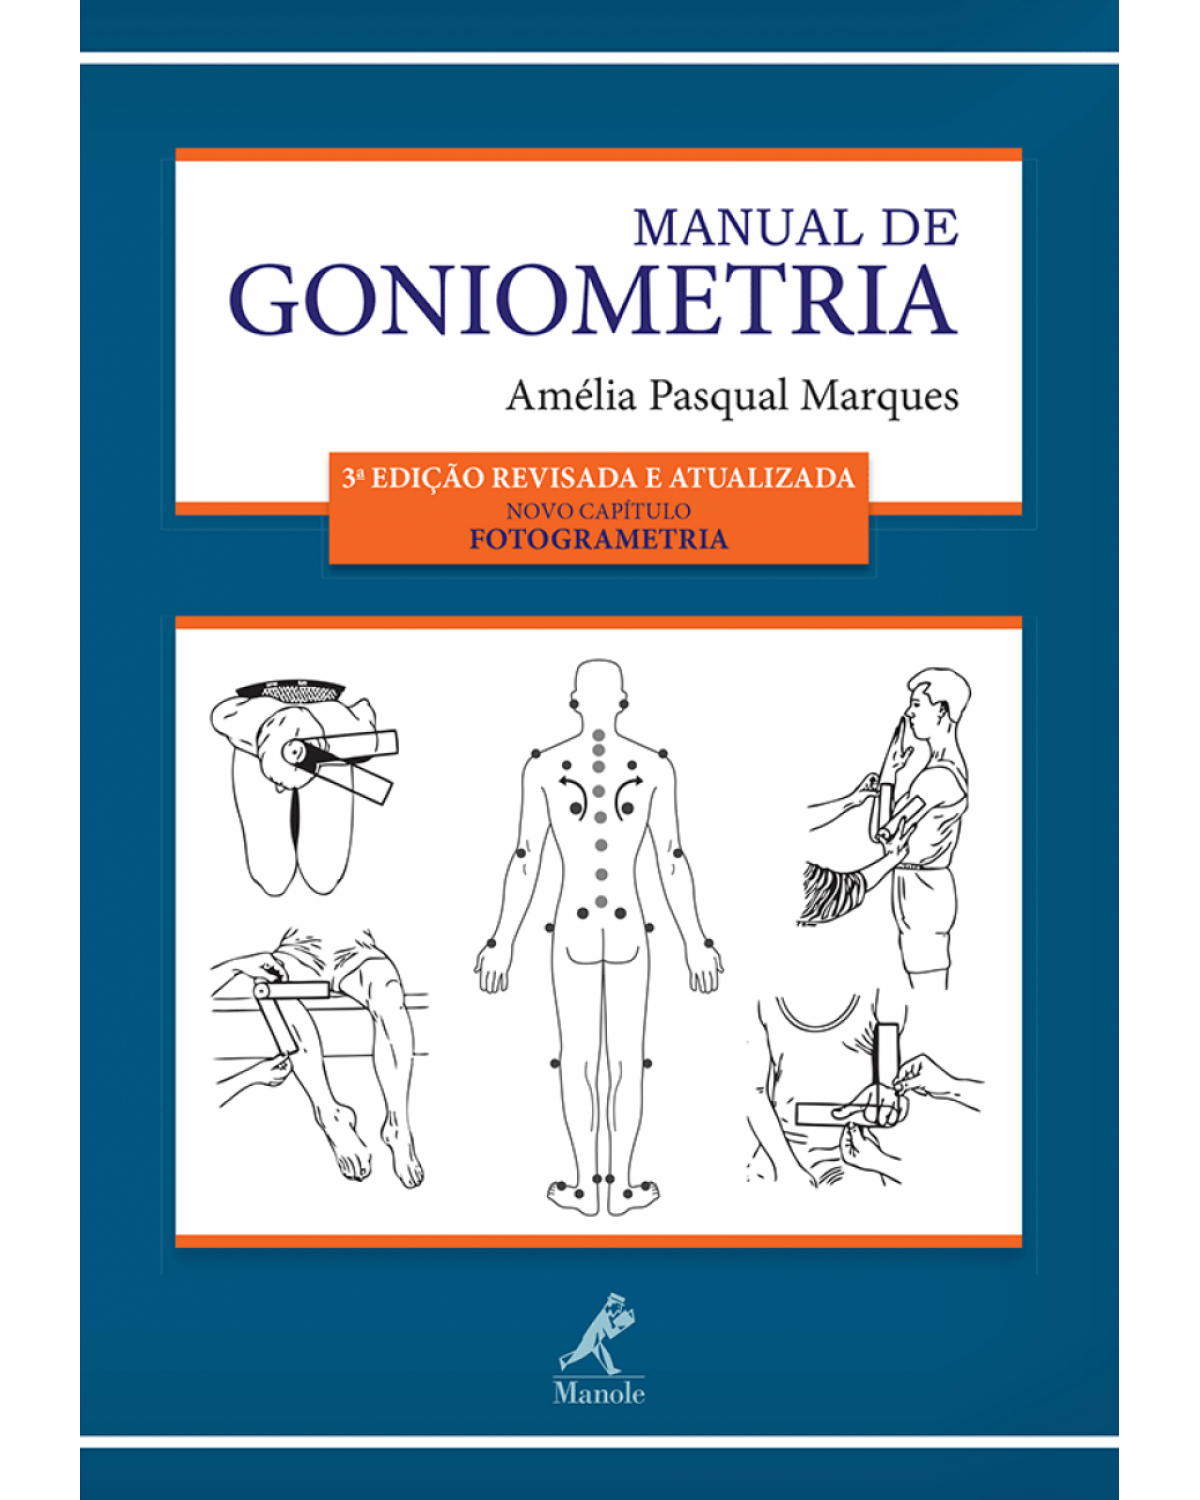 Manual de goniometria - 3ª Edição | 2014